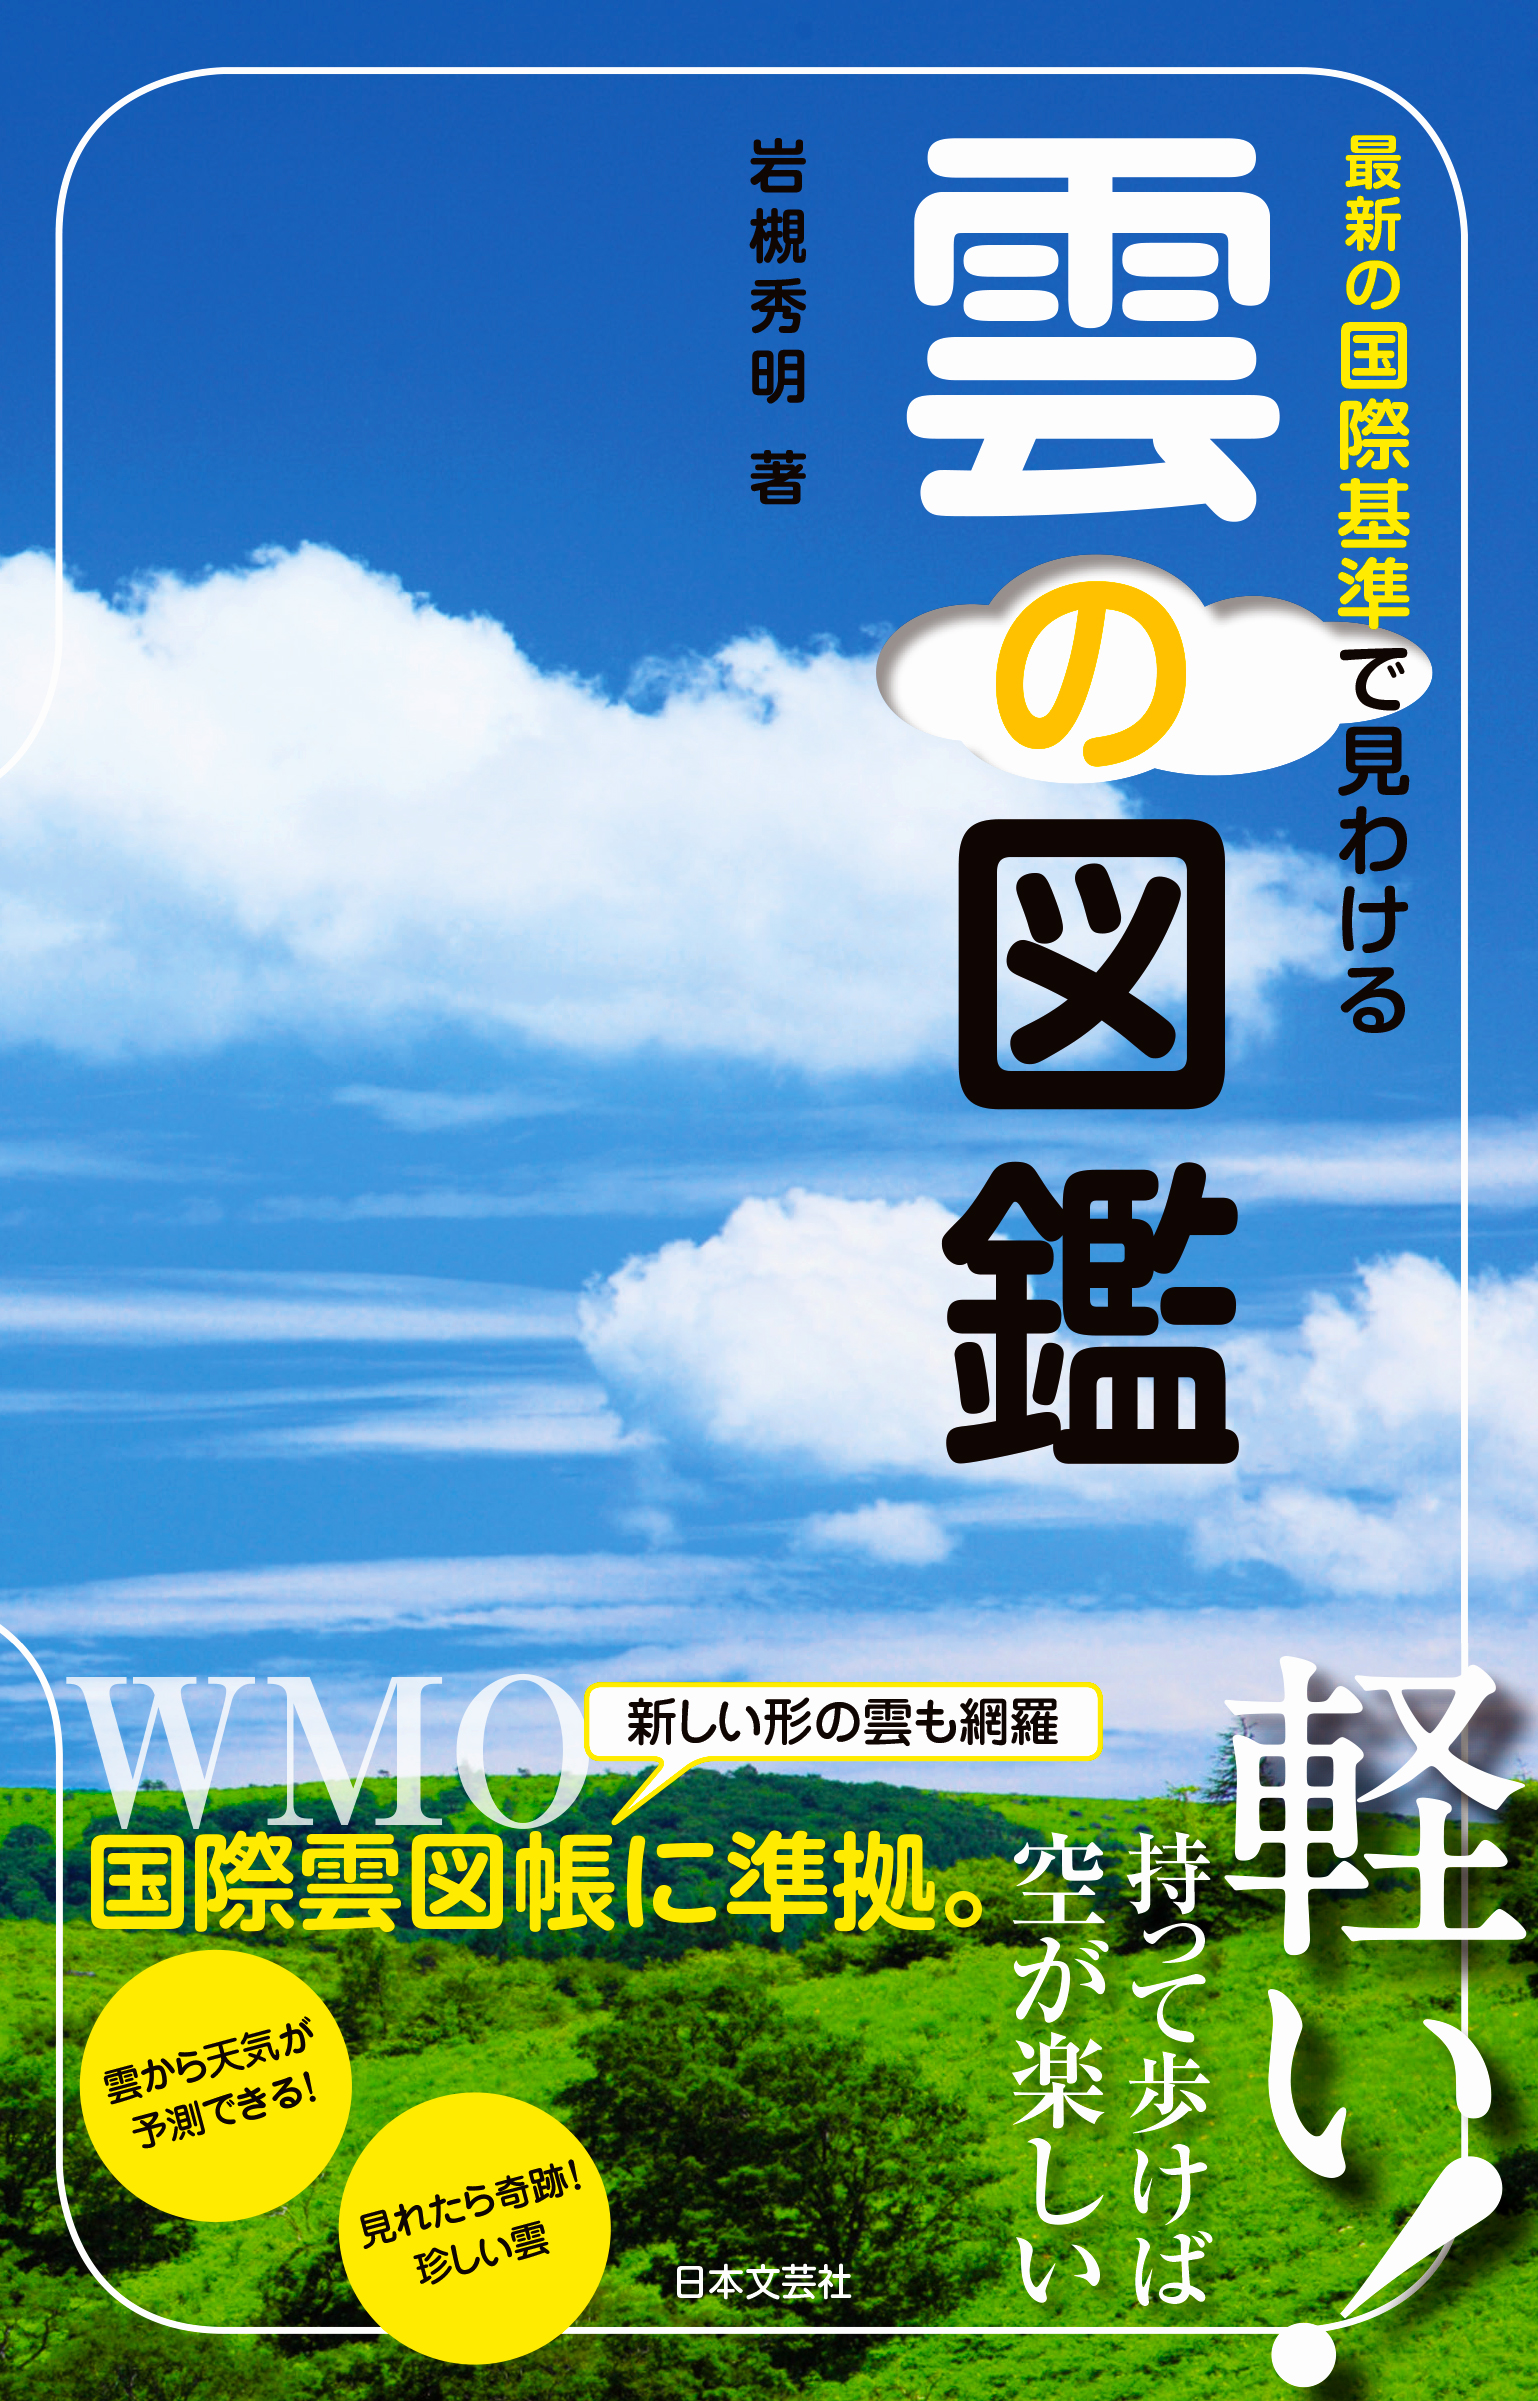 9 1重版出来 キッズもマニアも納得の画期的な雲の図鑑が人気です 最新の国際基準で見わける雲の図鑑 株式会社日本文芸社のプレスリリース